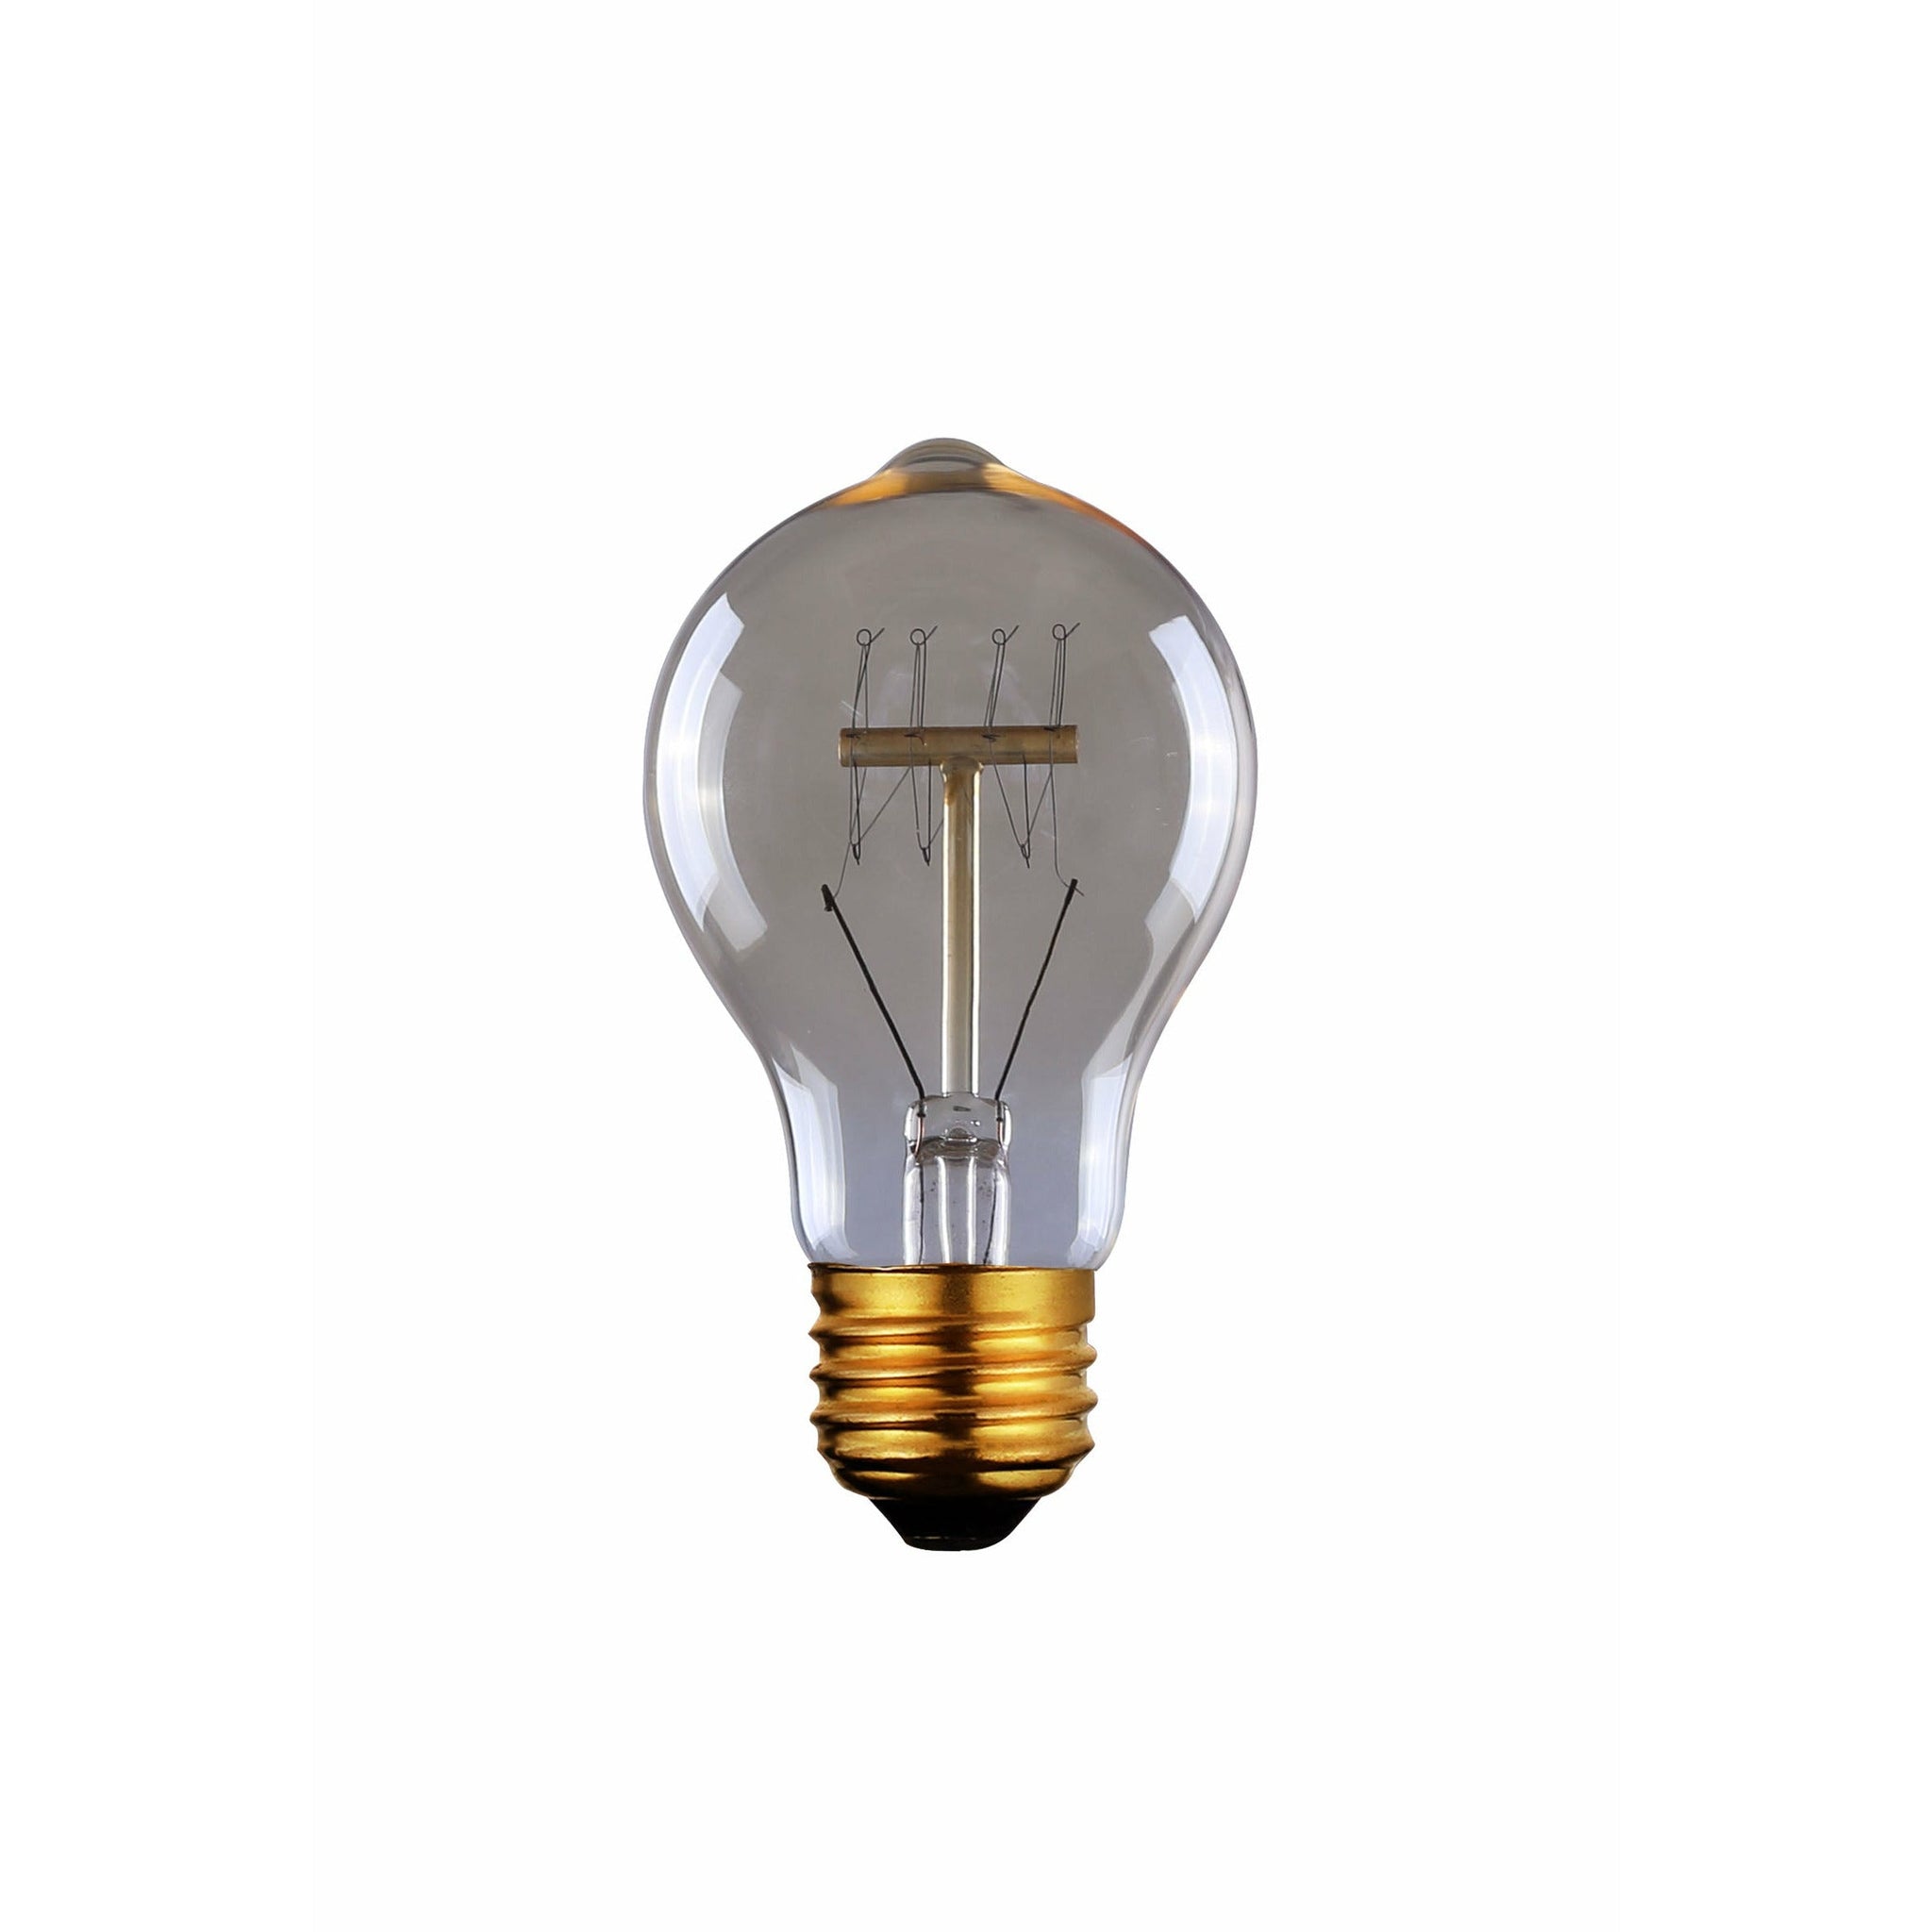 Canarm Edison Bulb